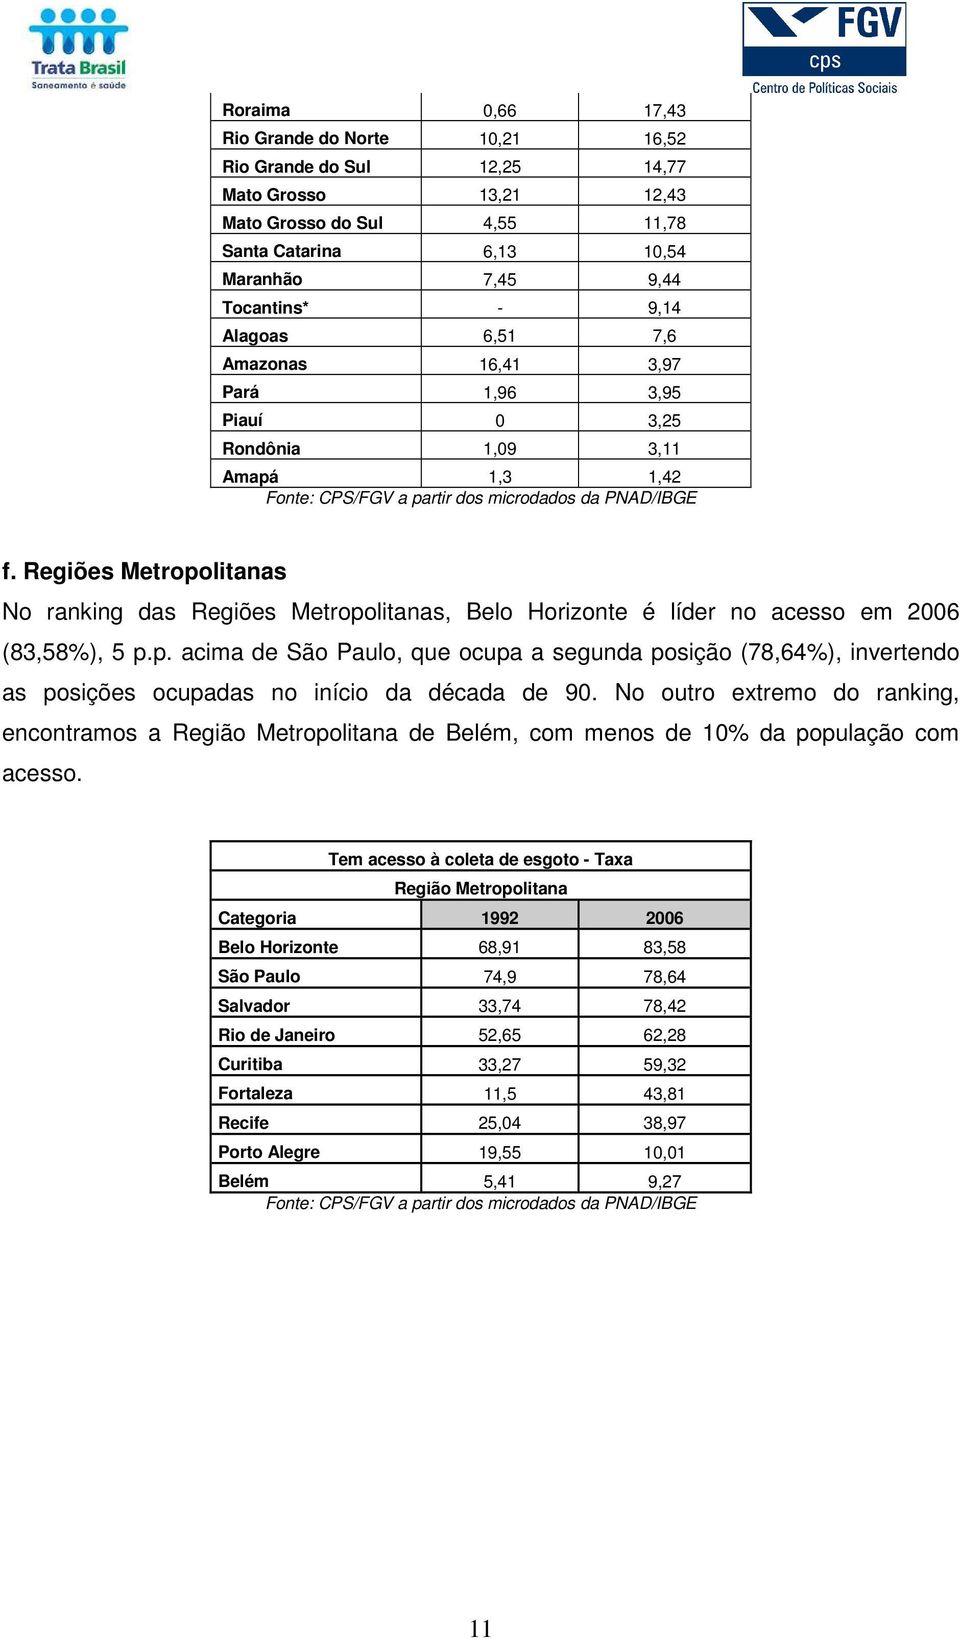 Regiões Metropolitanas No ranking das Regiões Metropolitanas, Belo Horizonte é líder no acesso em 2006 (83,58%), 5 p.p. acima de São Paulo, que ocupa a segunda posição (78,64%), invertendo as posições ocupadas no início da década de 90.